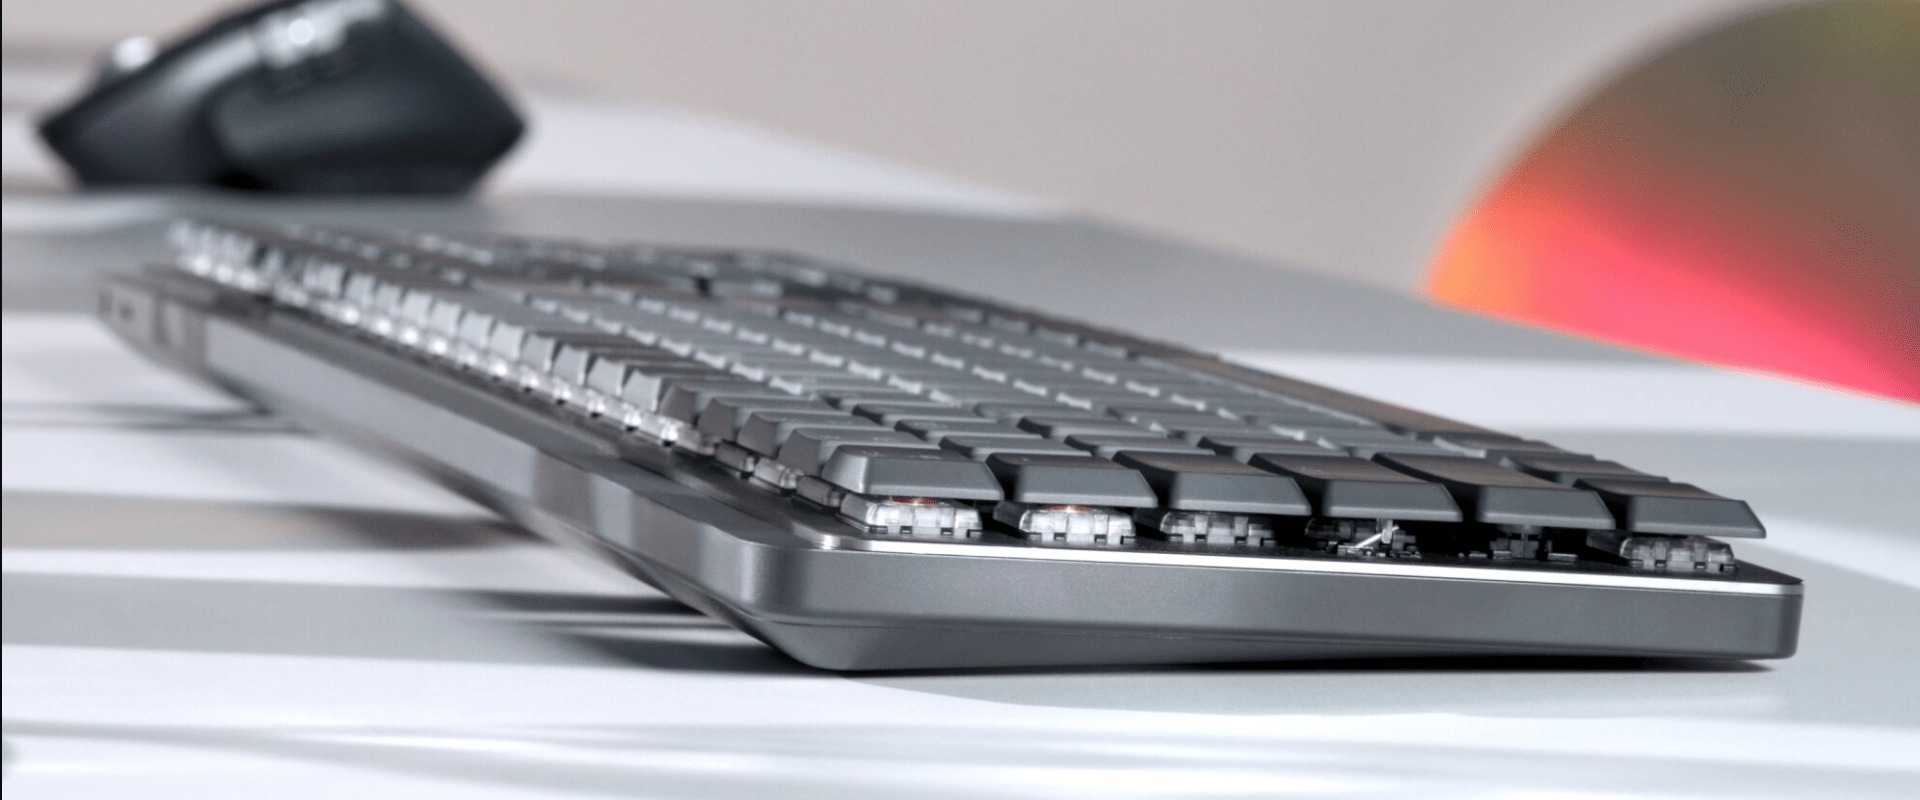 Was ist der Unterschied zwischen einer Bluetooth-Tastatur und einer drahtlosen Tastatur?